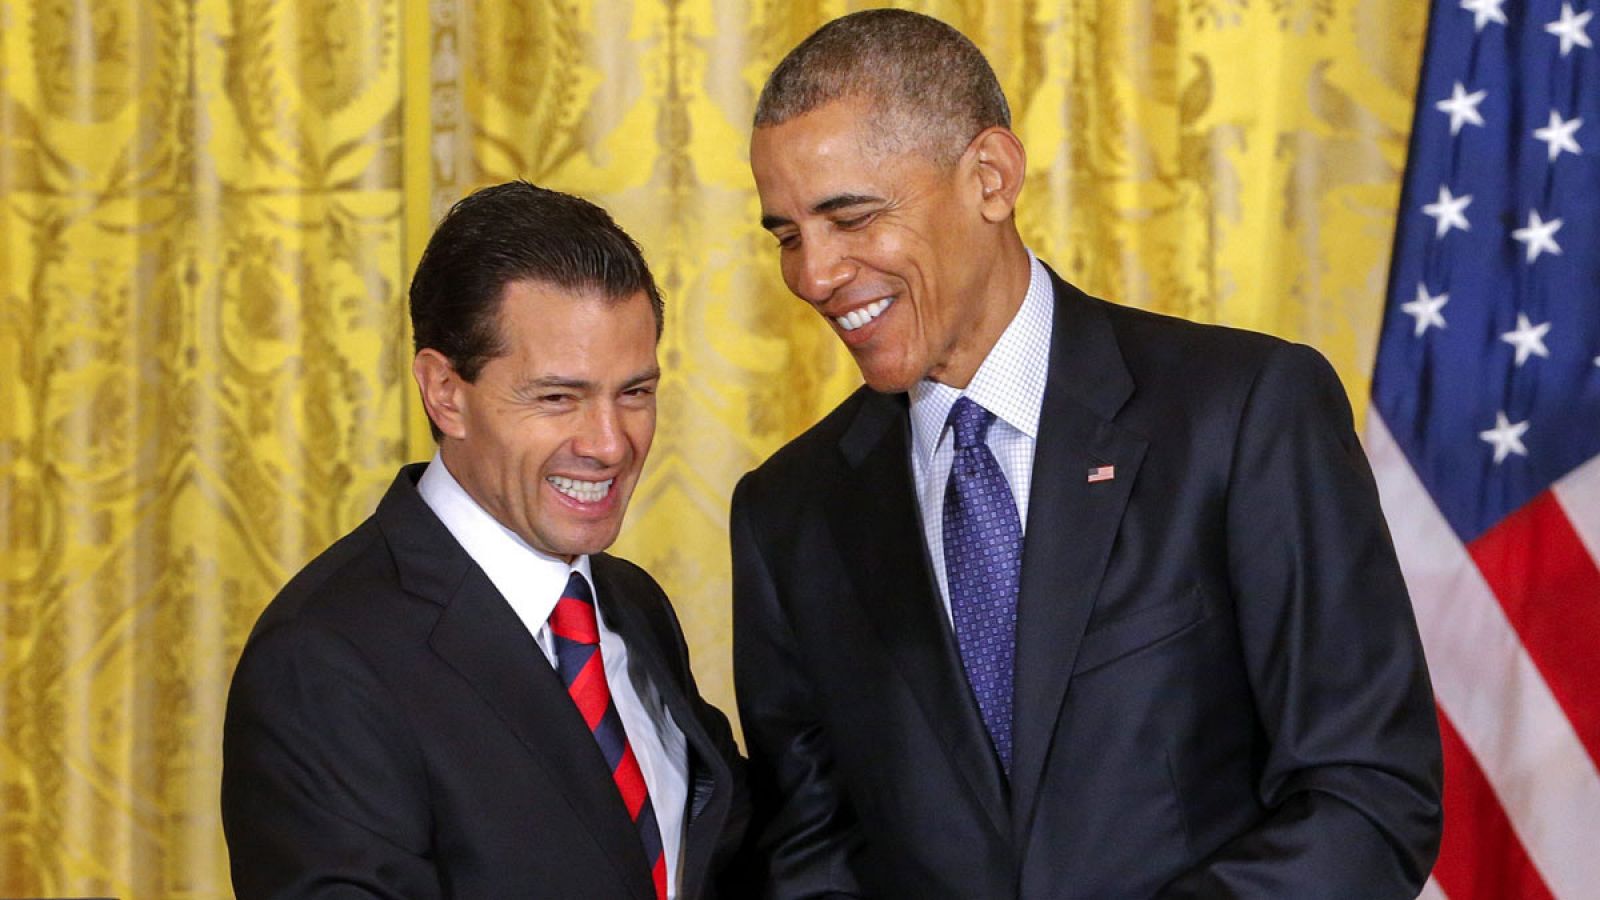 El presidente mexicano, Enrique Peña Nieto (i), estrecha la mano de su homólogo estadounidense, Barack Obama (d), tras una rueda de prensa celebrada en la Casa Blanca.